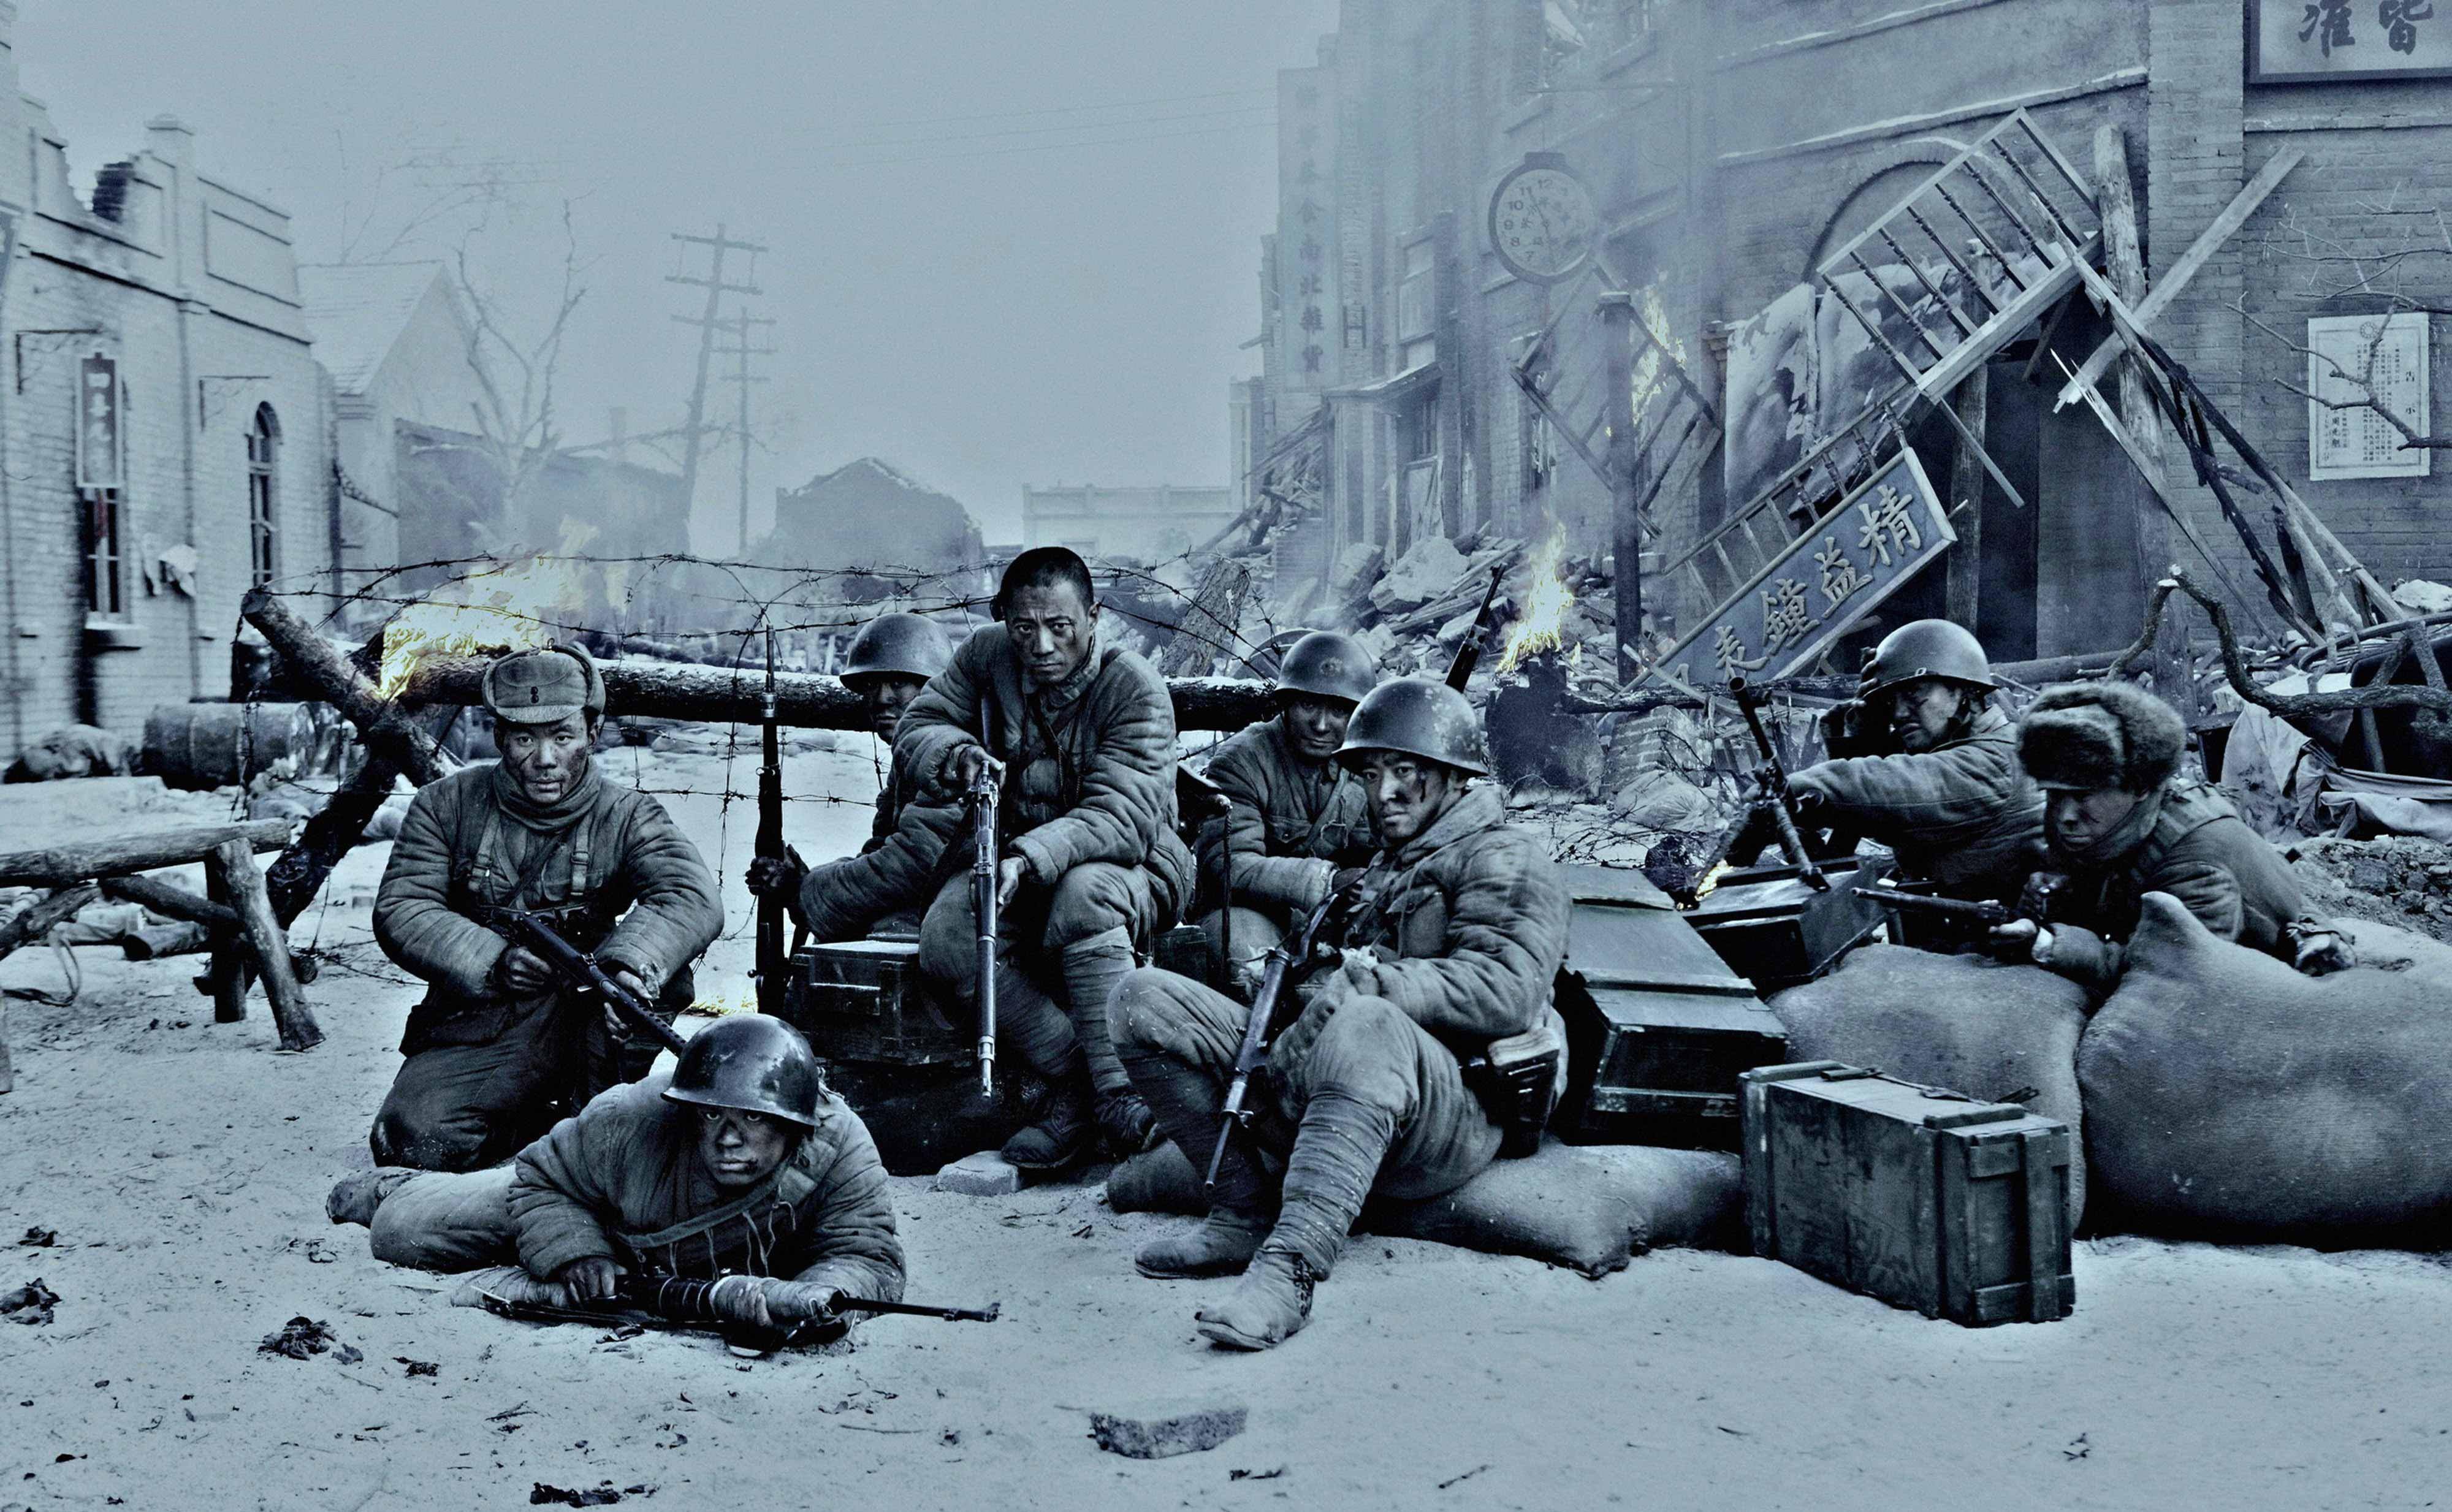 《八佰》不仅是年度最佳预定,也是1949年以来国产战争片(包括港台电影